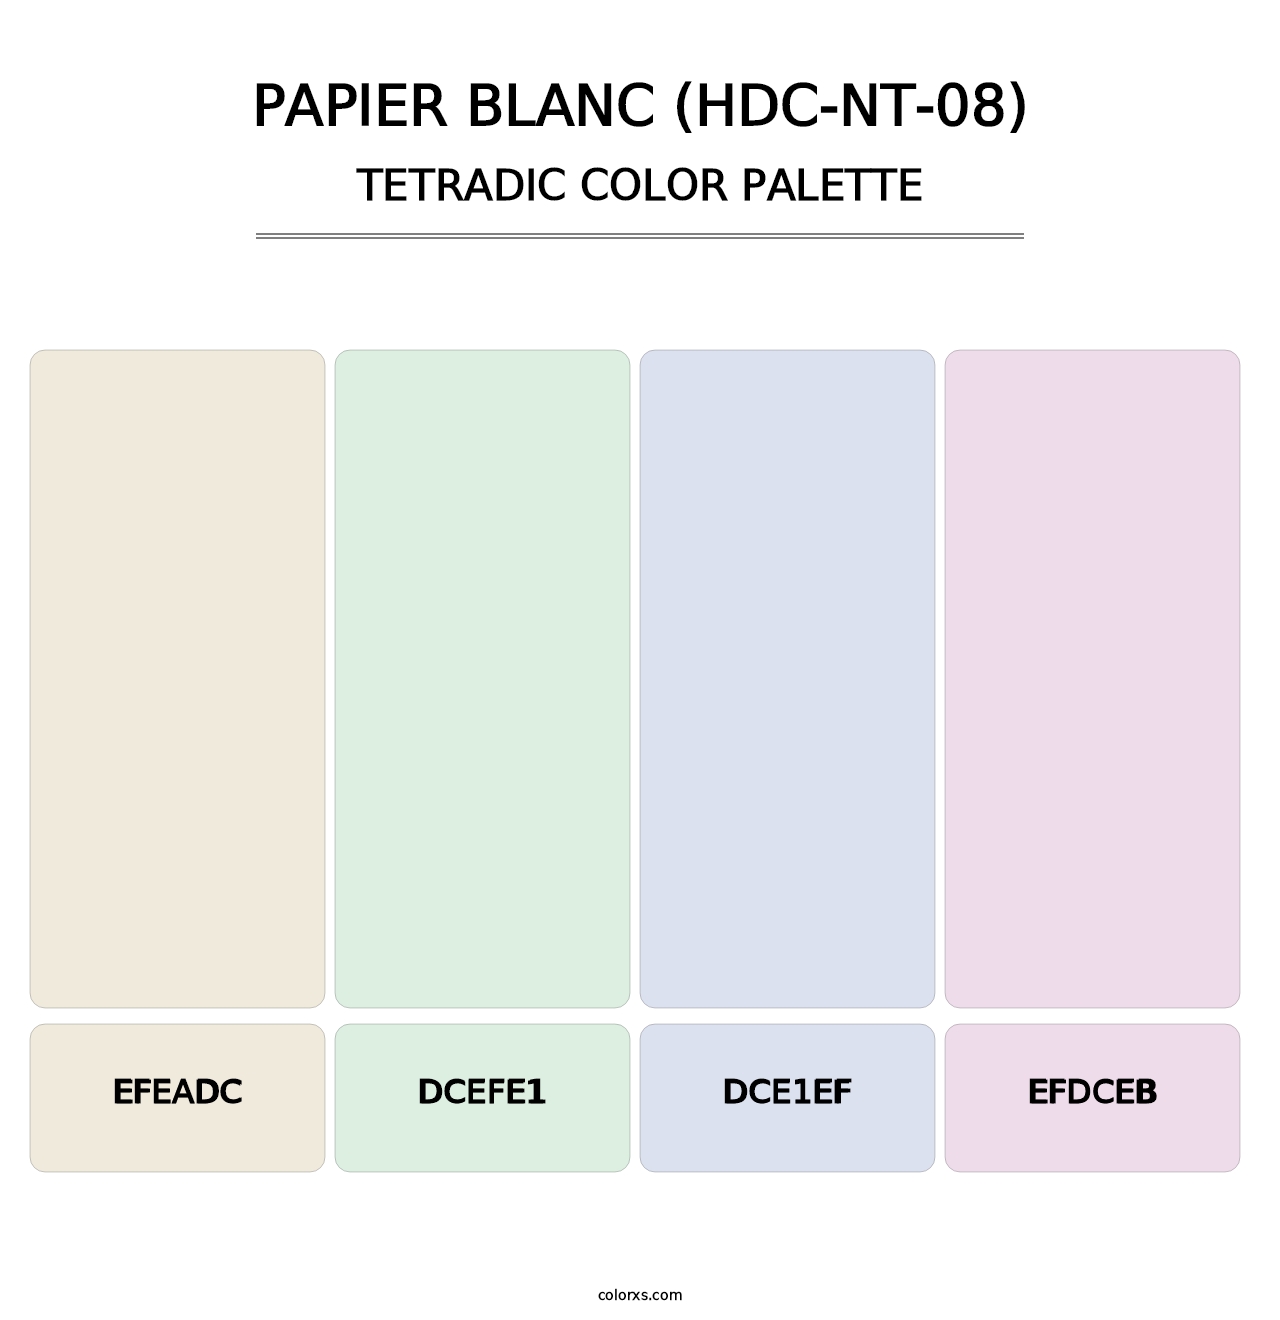 Papier Blanc (HDC-NT-08) - Tetradic Color Palette